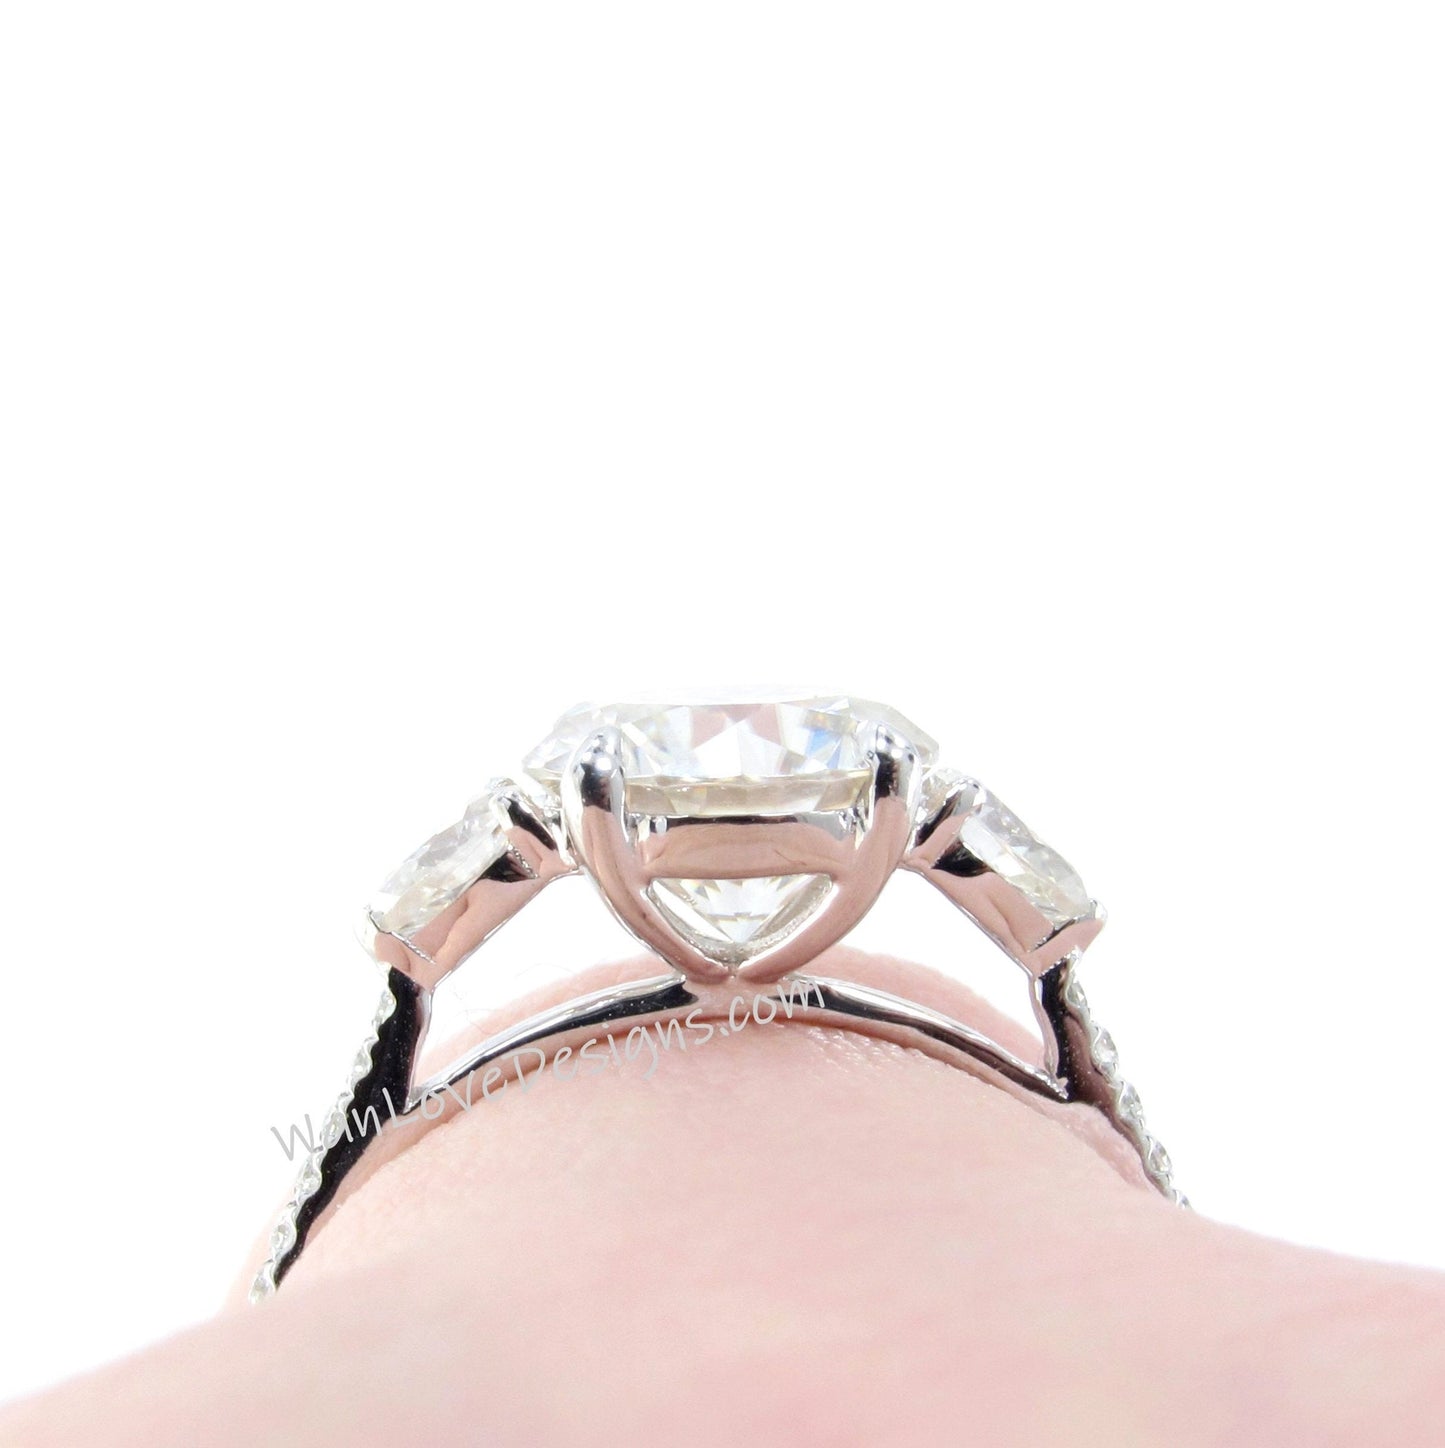 White Sapphire Round Pear Diamond Ring, Three Stone Moissanite Ring, Round sapphire engagement Ring, Diamond Band Ring